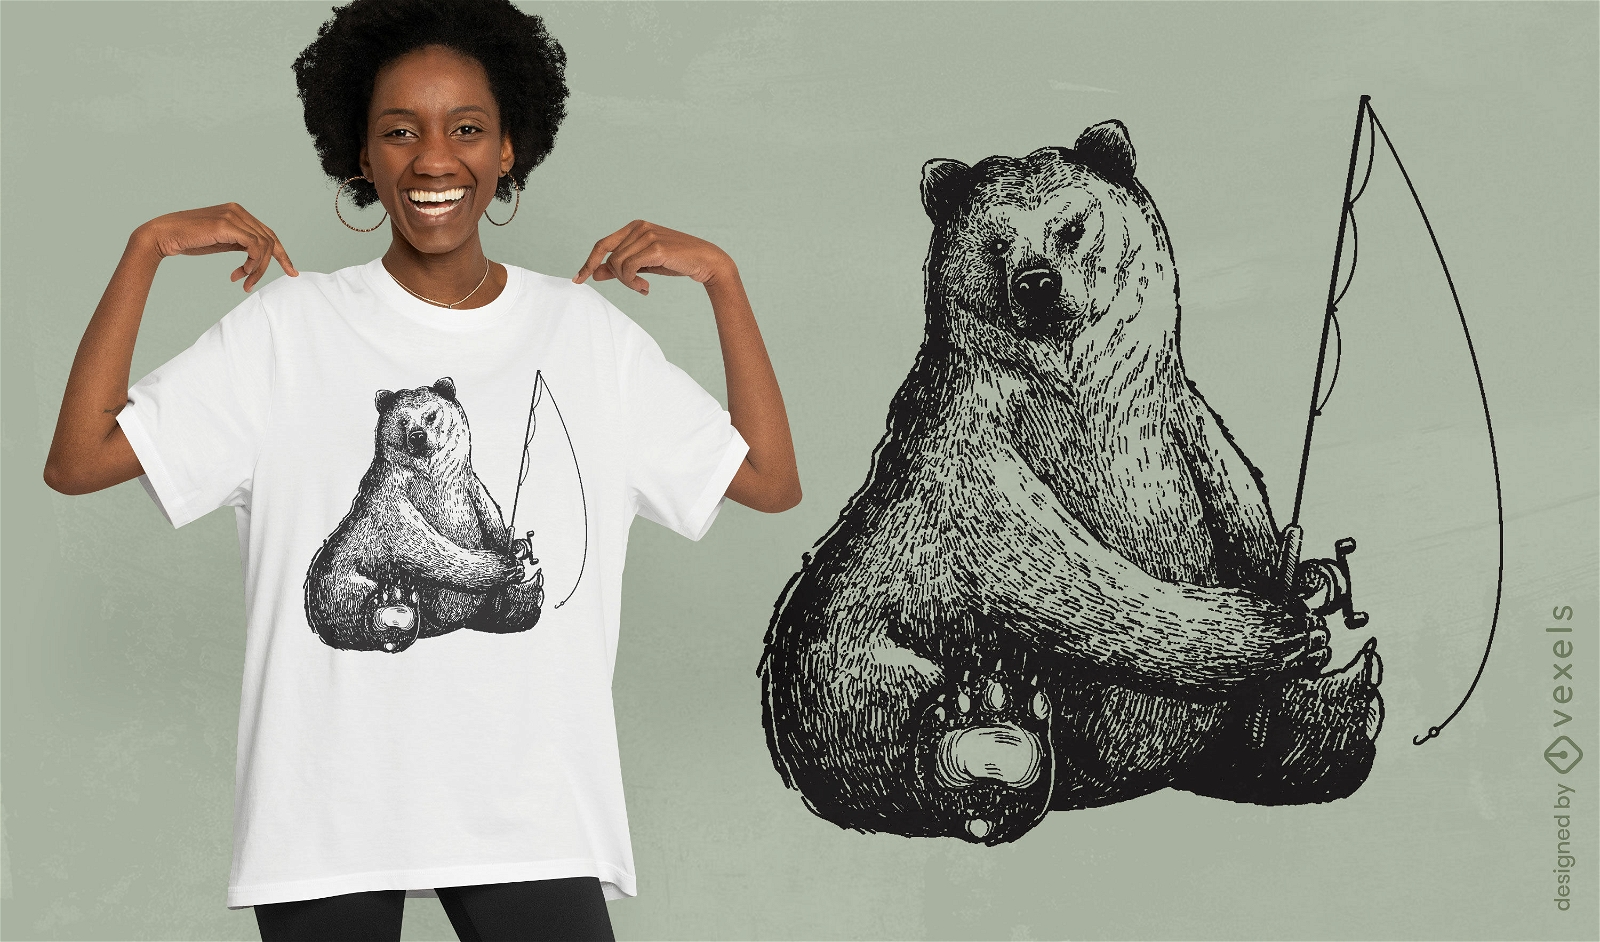 Dise?o de camiseta de pesca de animales de oso pardo.